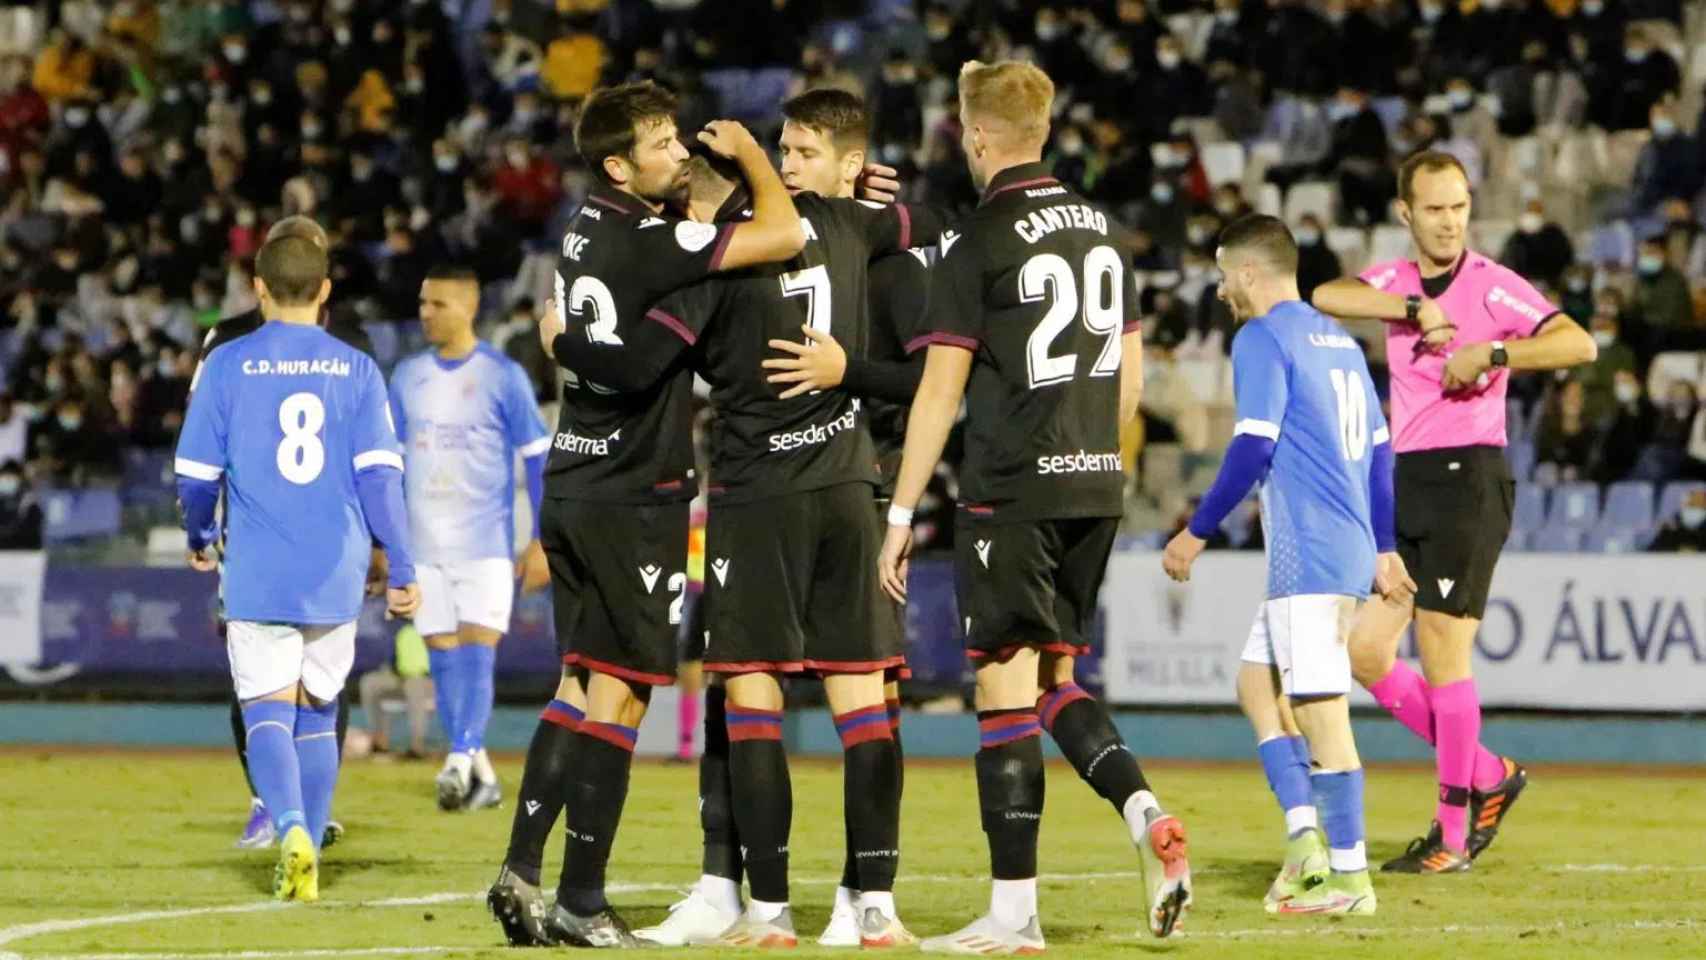 LaLiga denuncia un presunto amaño en el CD Huracán Melilla - Levante de la  Copa del Rey en 2021